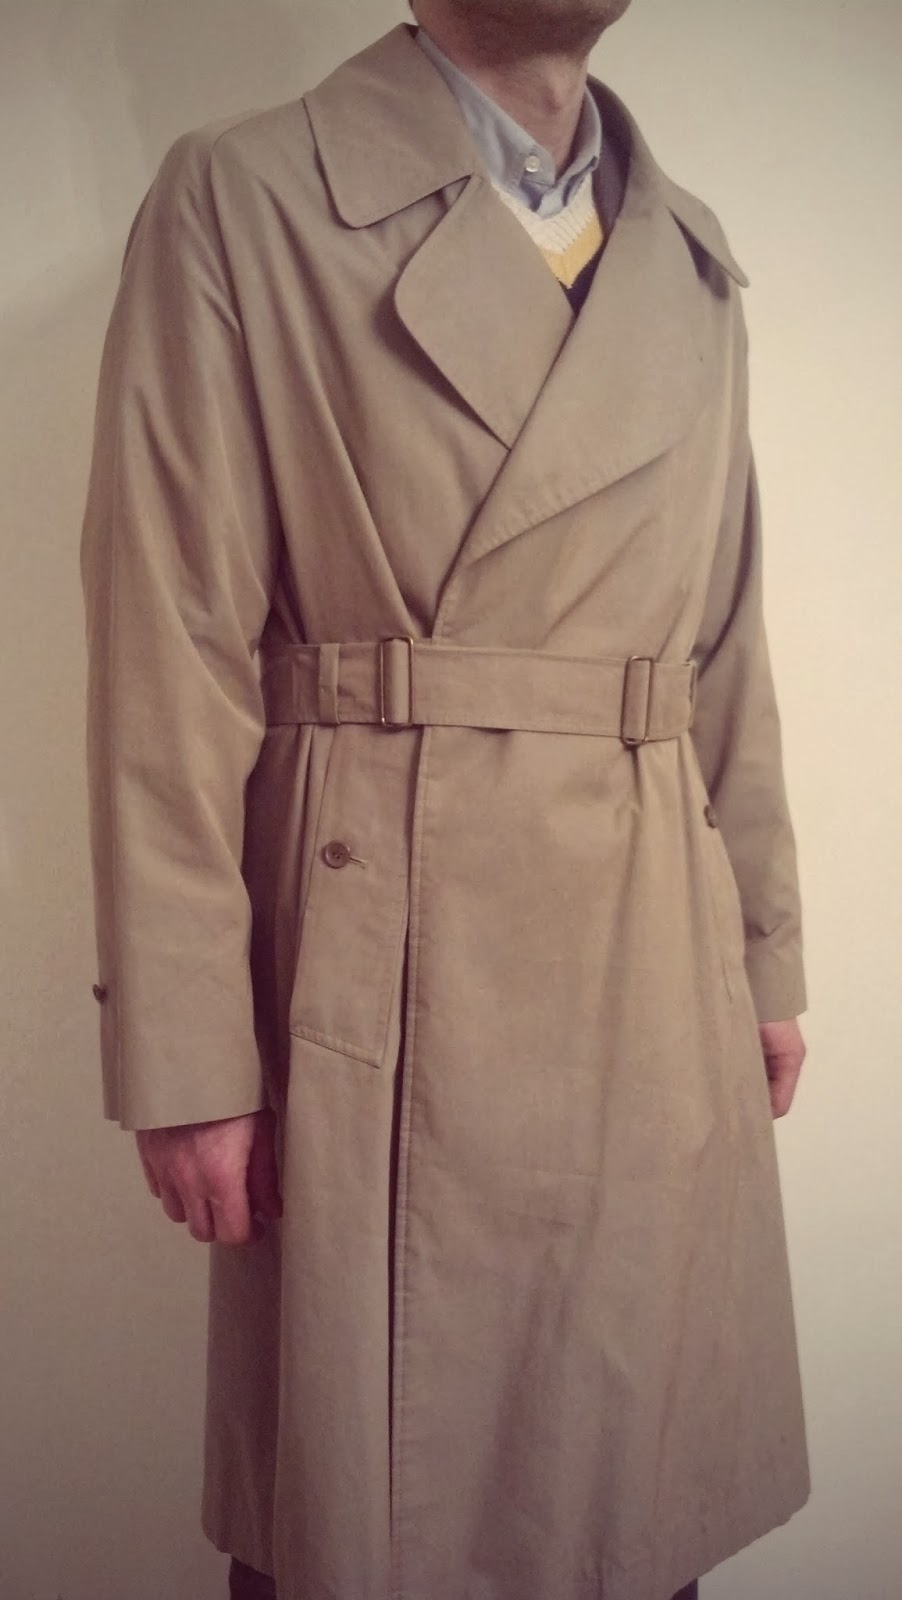 Odd Jacket: Tielocken Coat